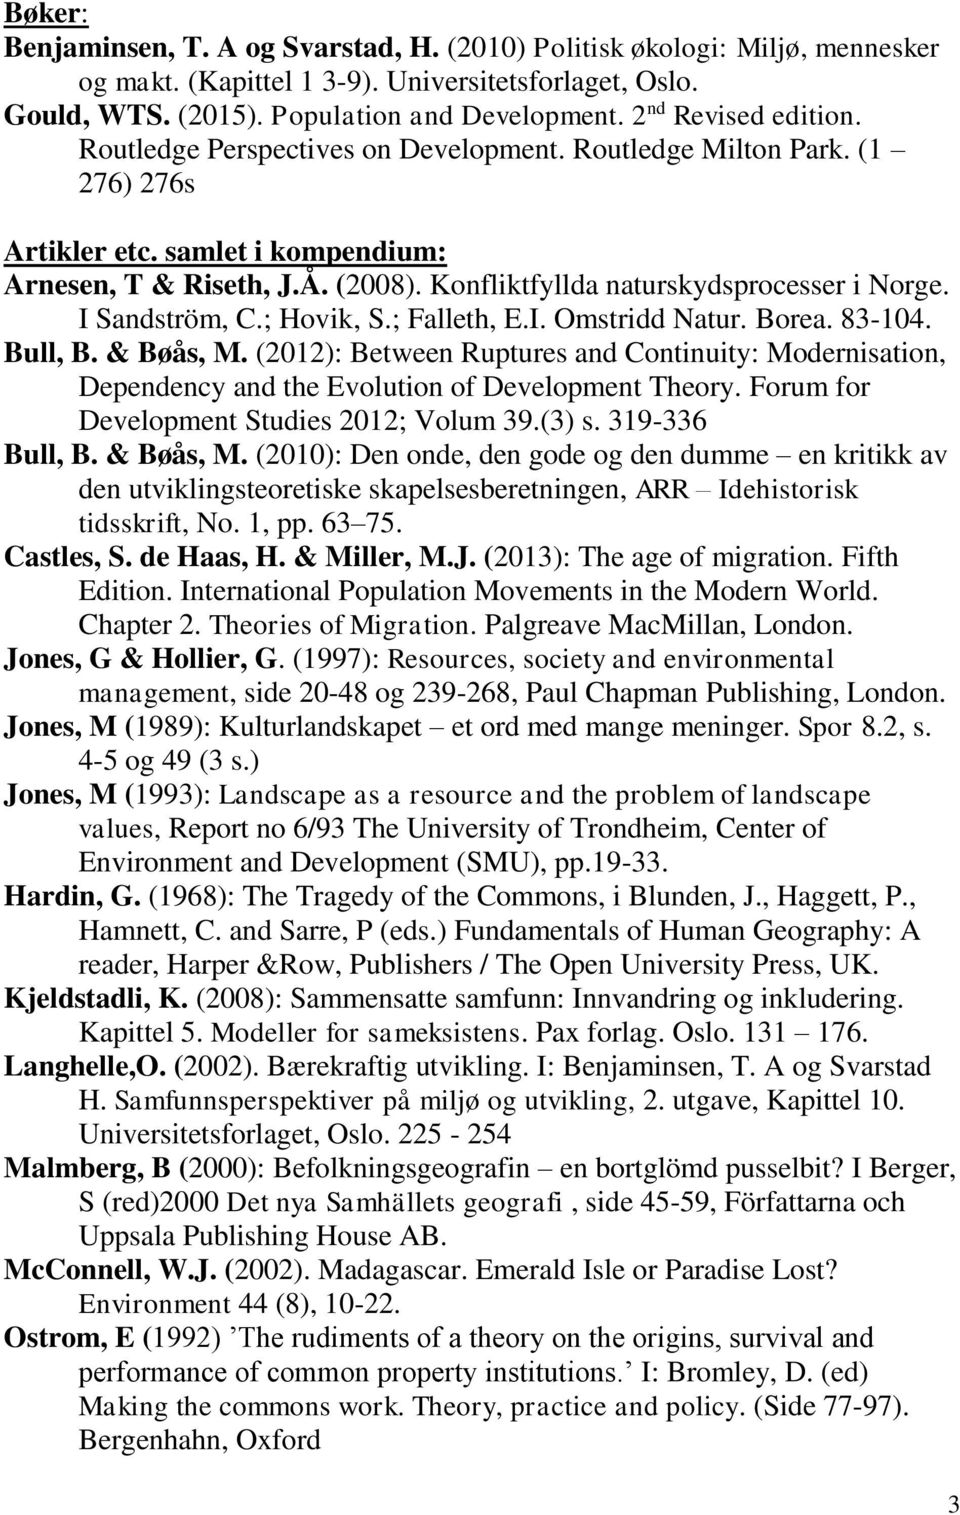 Konfliktfyllda naturskydsprocesser i Norge. I Sandström, C.; Hovik, S.; Falleth, E.I. Omstridd Natur. Borea. 83-104. Bull, B. & Bøås, M.